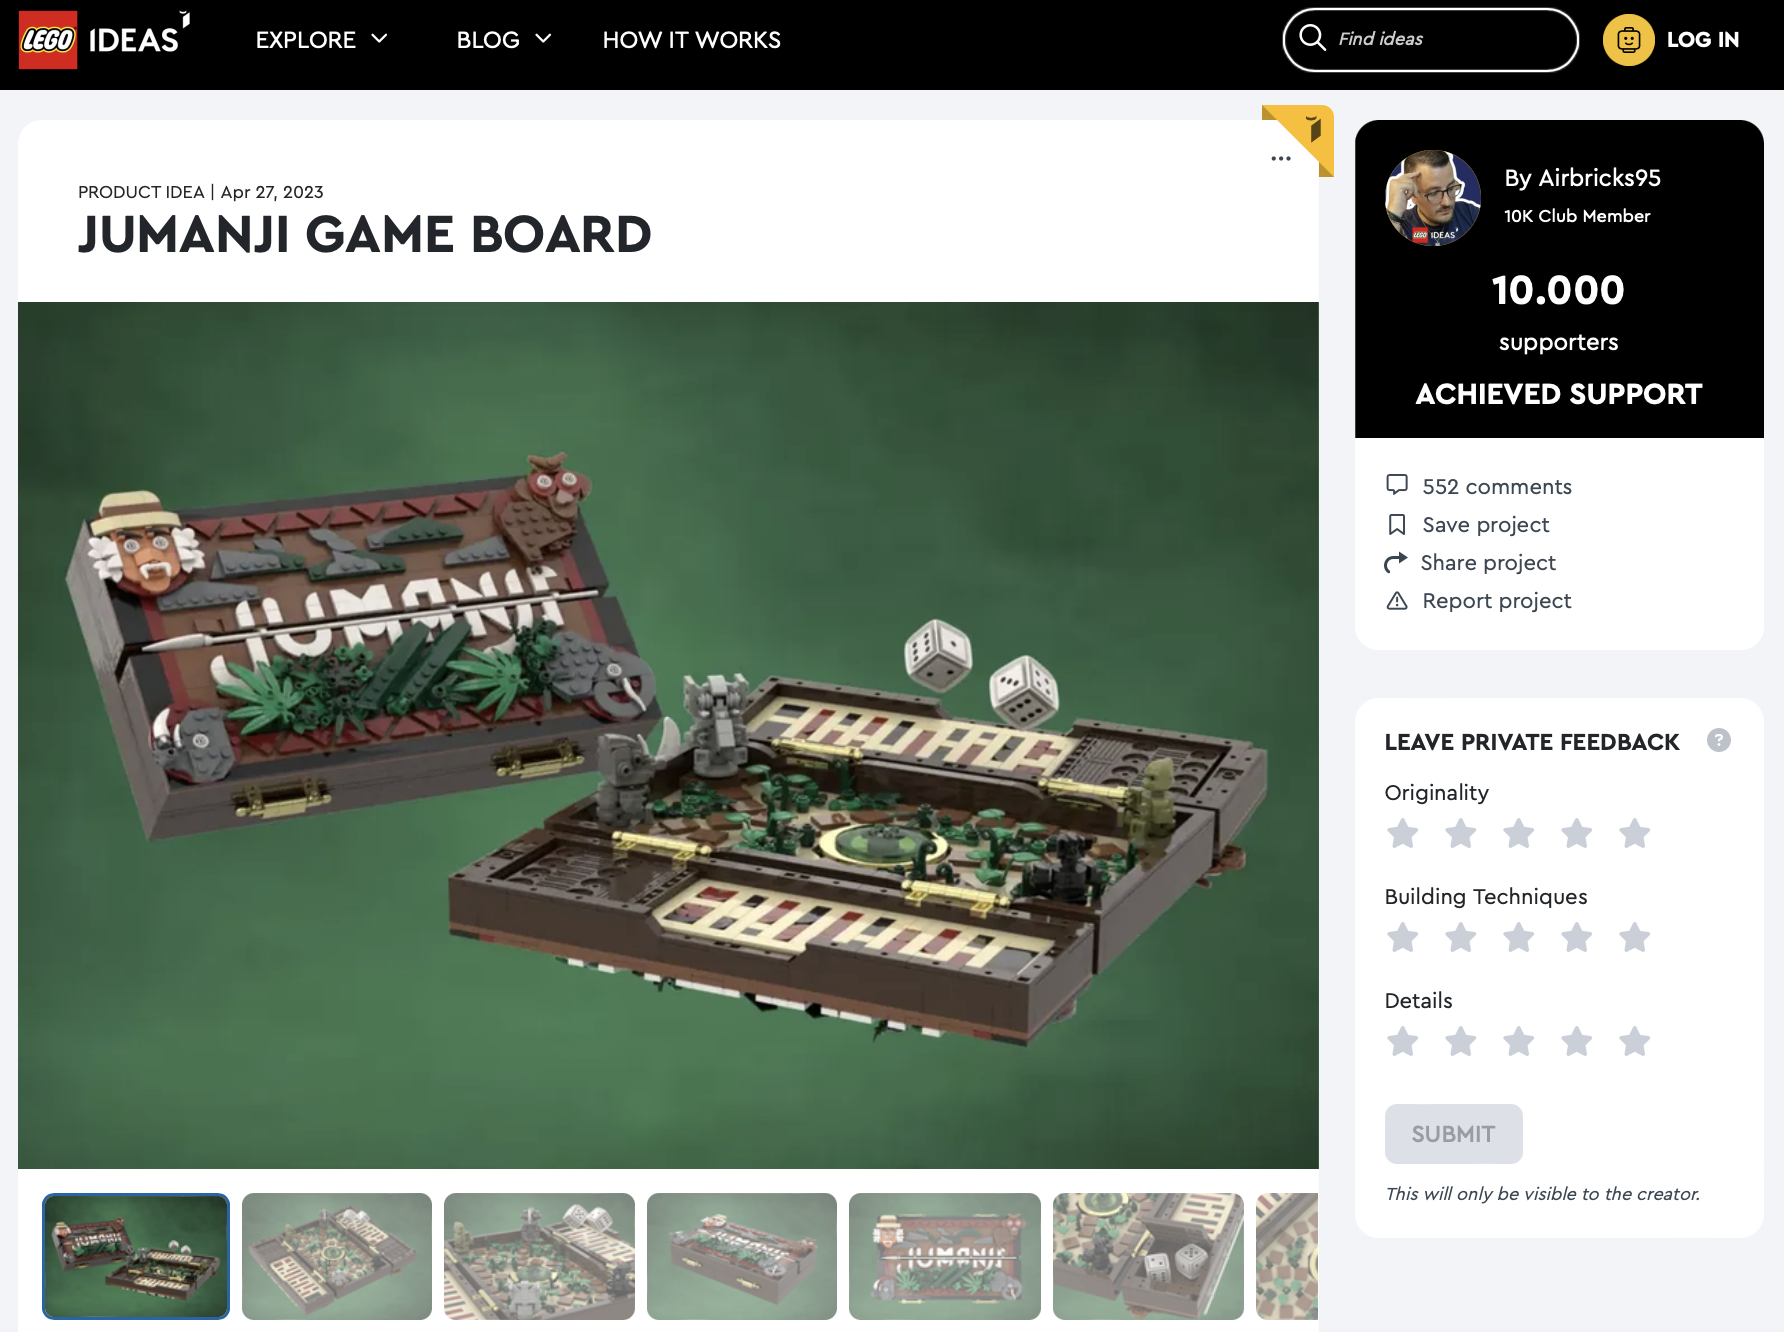 Jumanji Game Board ha raggiunto i 10.000 like sul portale LEGO Ideas